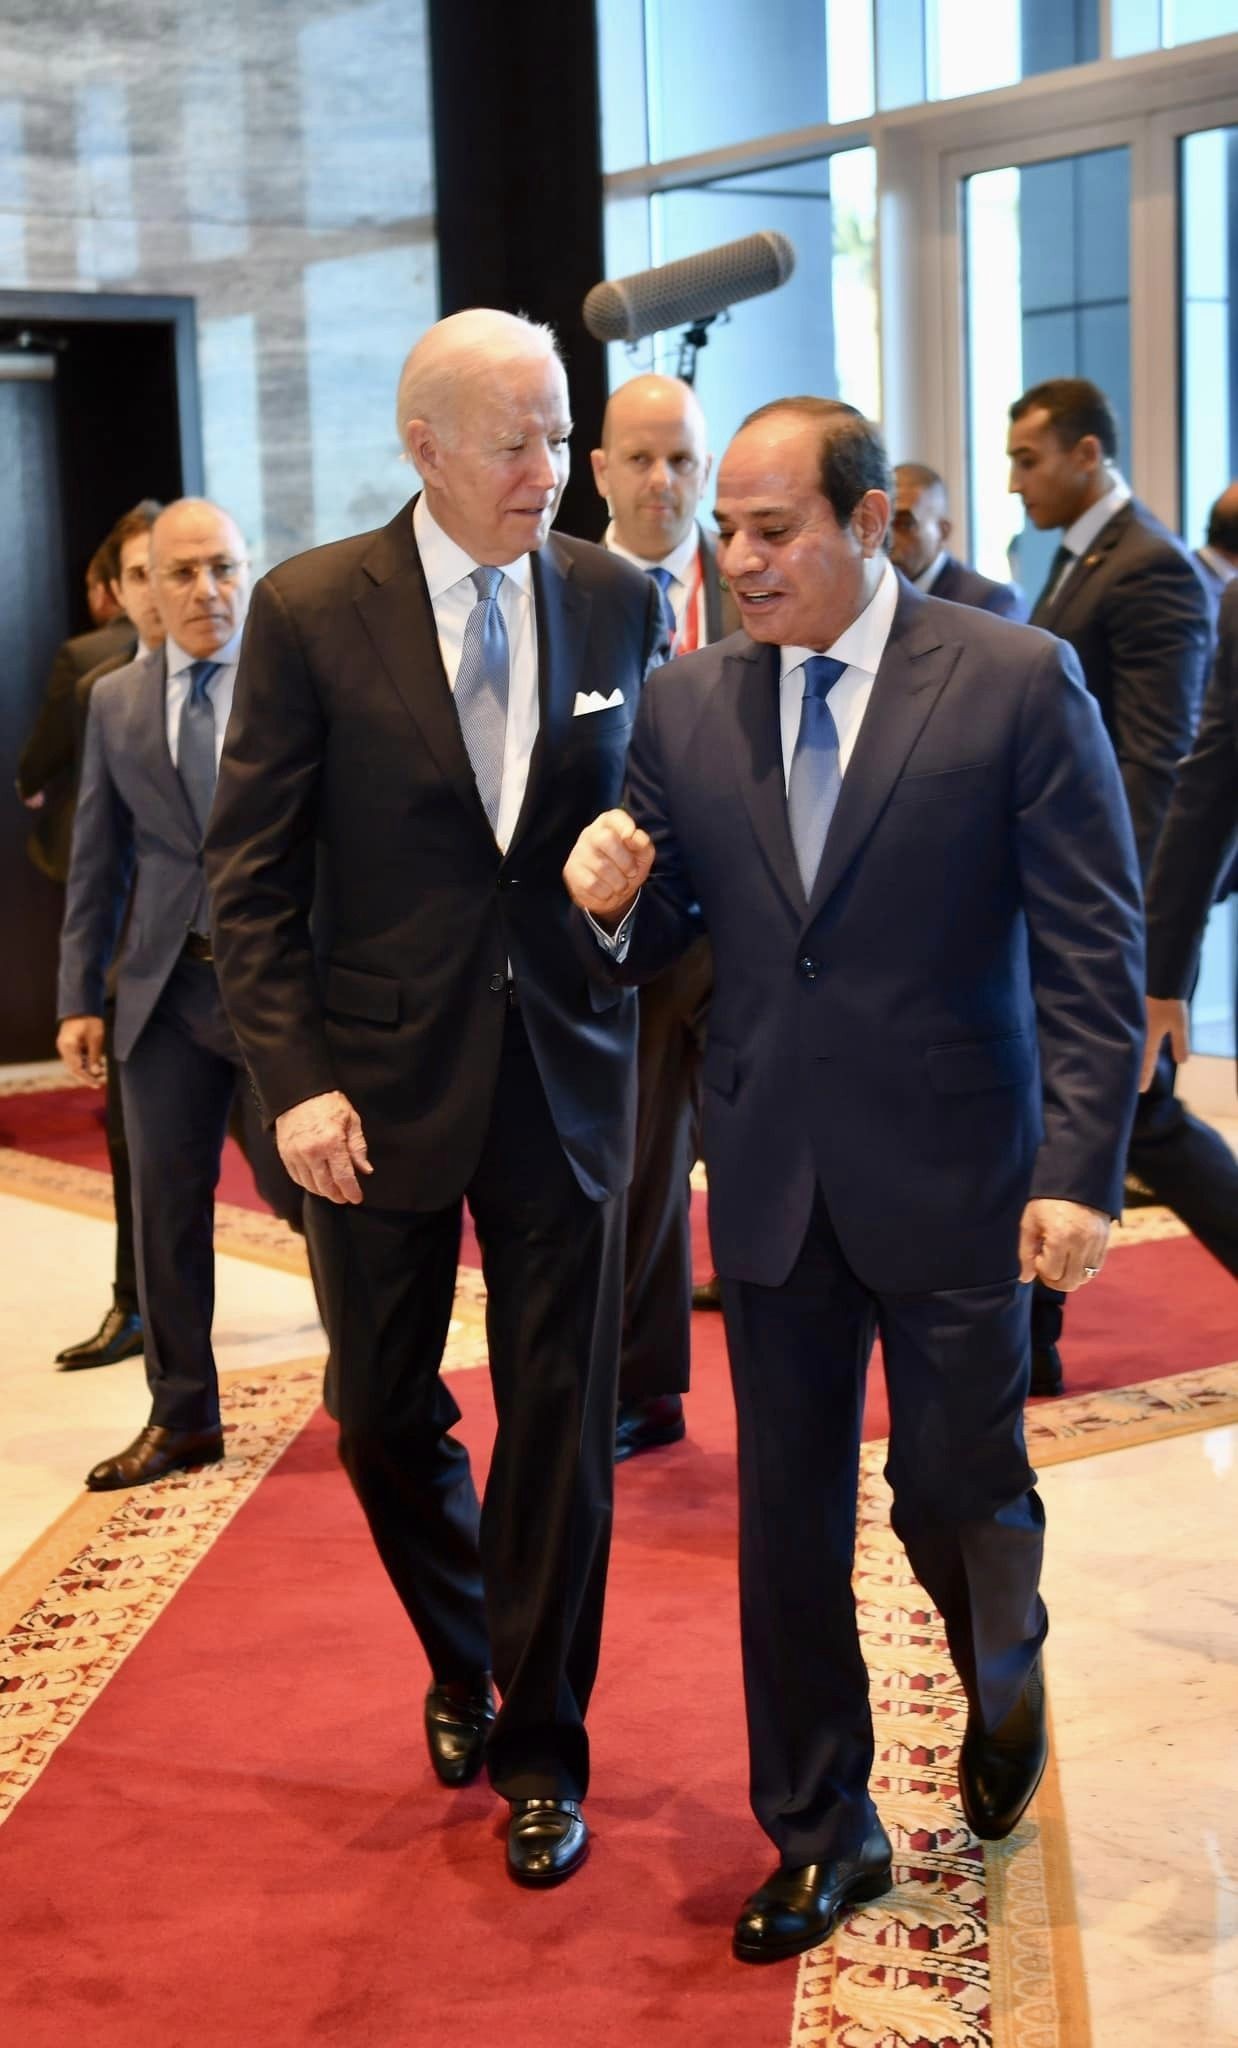 بالصور: تفاصيل لقاء الرئيس المصري مع بايدن في شرم الشيخ